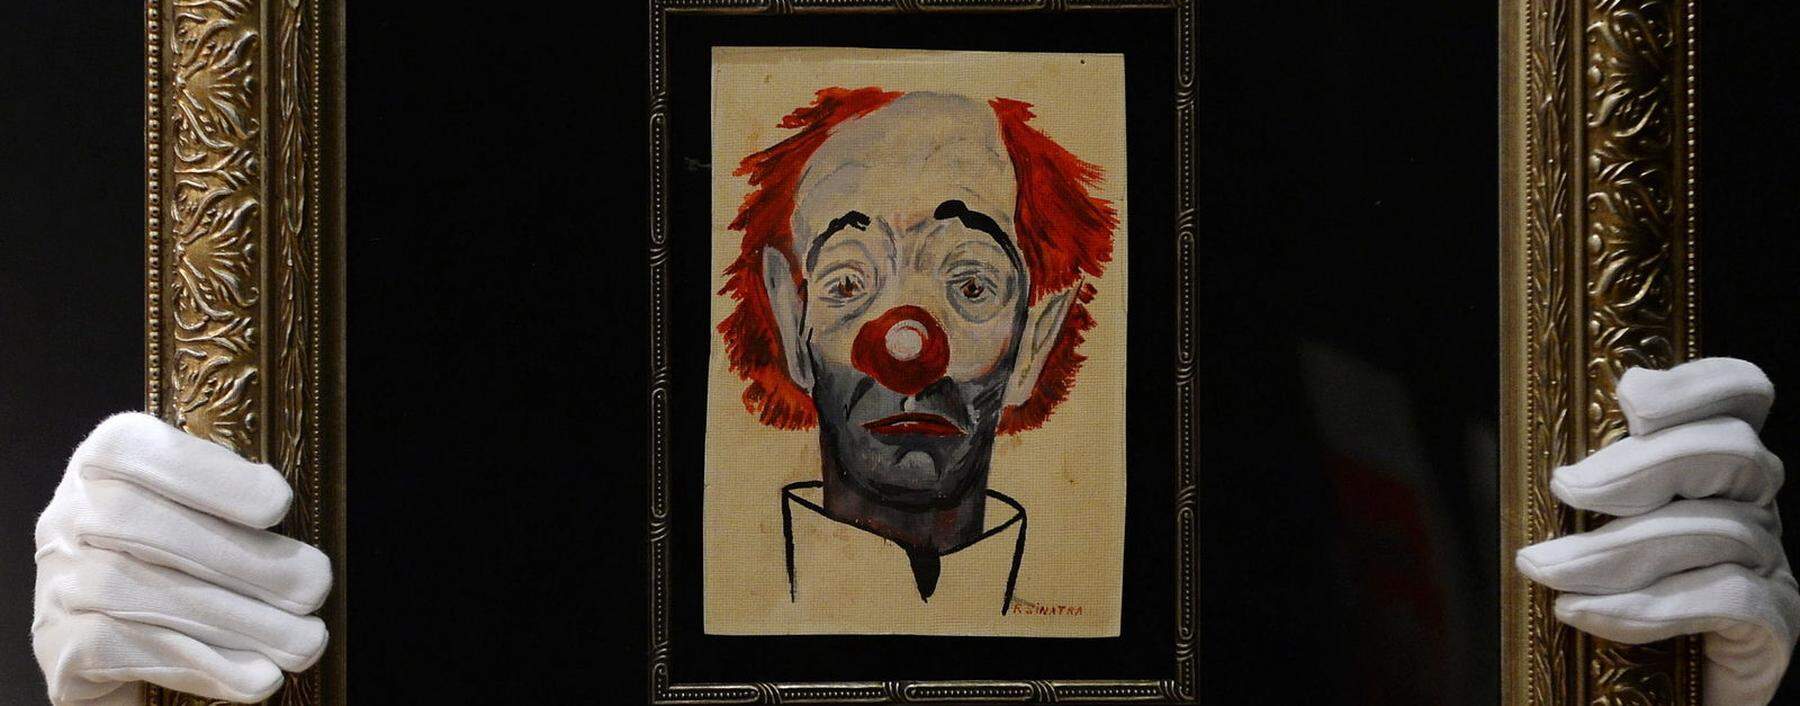 Der „traurige Clown“ ist ein Selbstporträt von Frank Sinatra, das 2013 bei Christie's versteigert wurde.